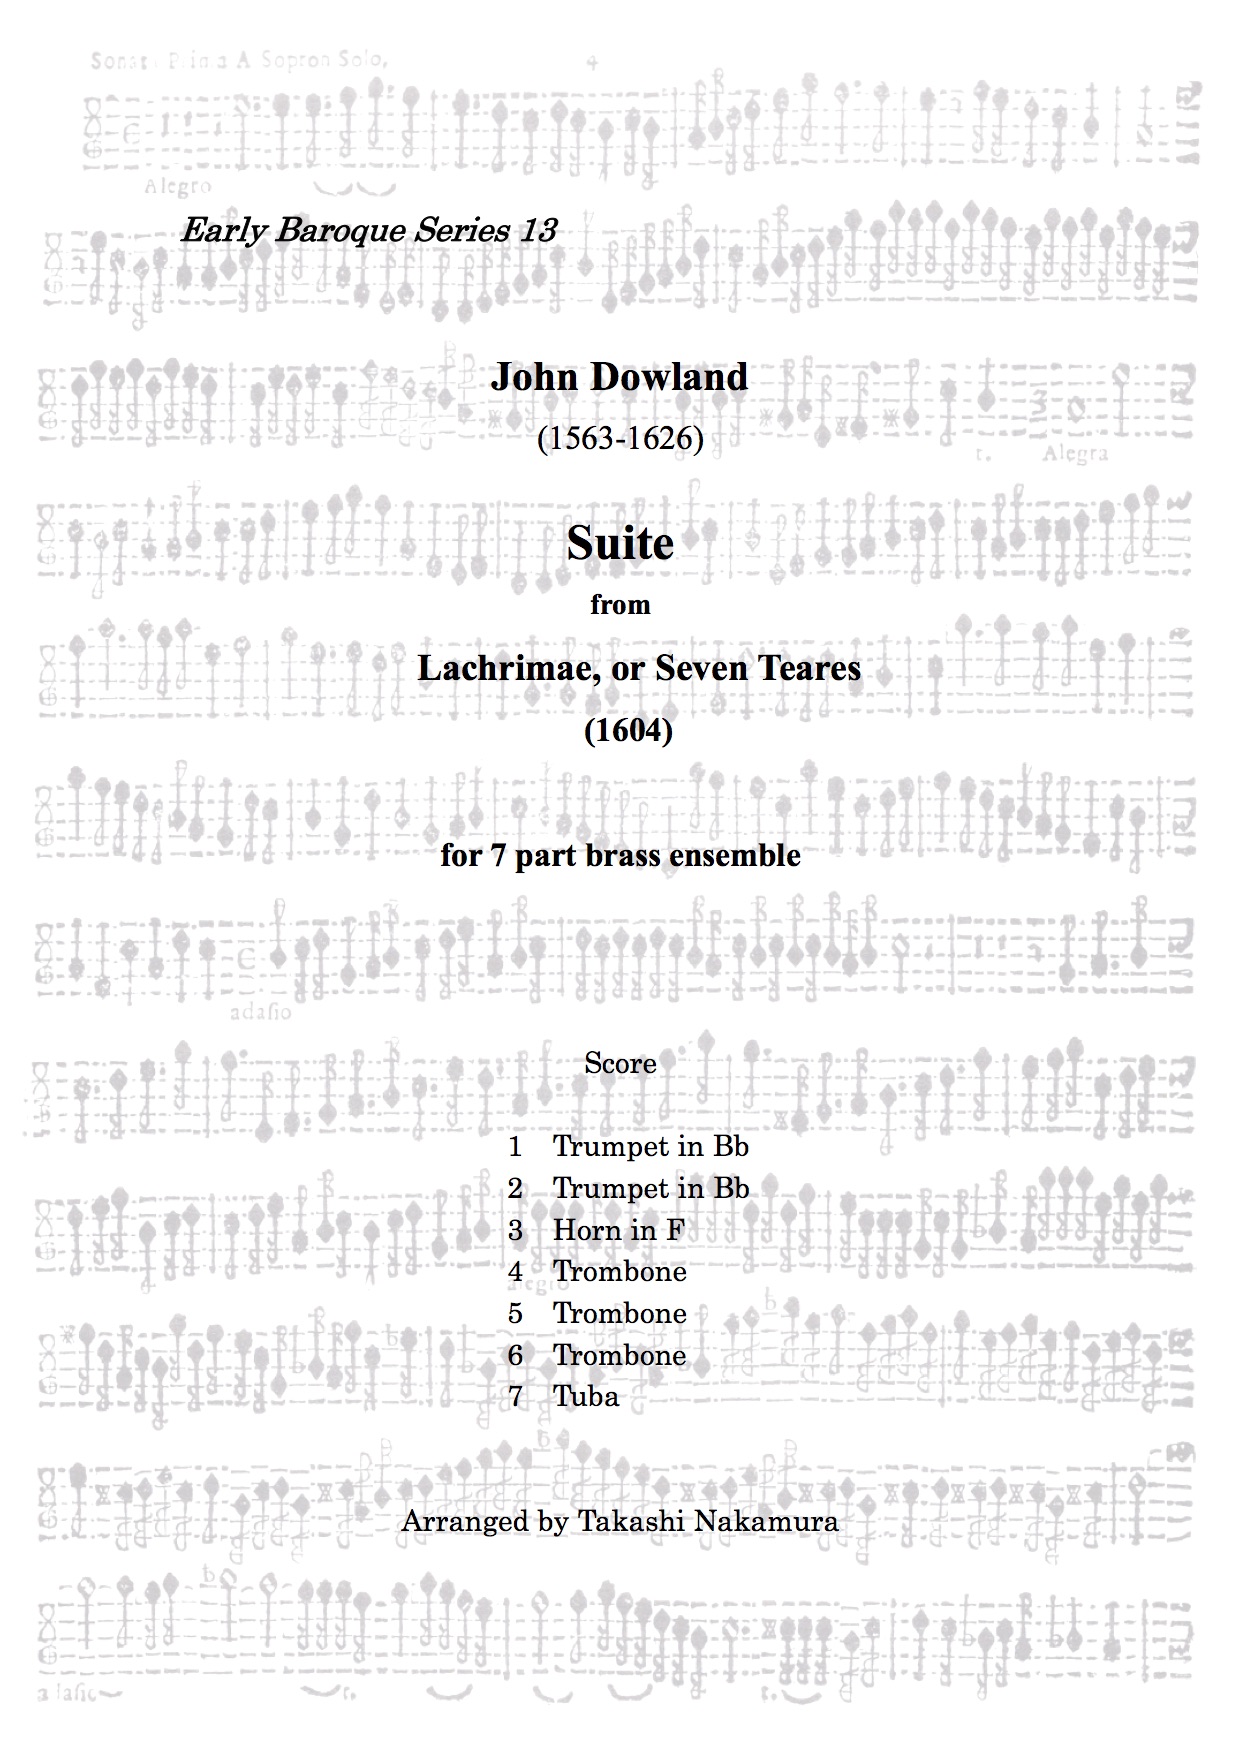 ダウランド ラクリメ、または７つの涙の曲集から組曲（初期バロックシリーズ 13） (ダウランド) 金管七重奏 | 金管アンサンブル楽譜 | NABEO  Music Library